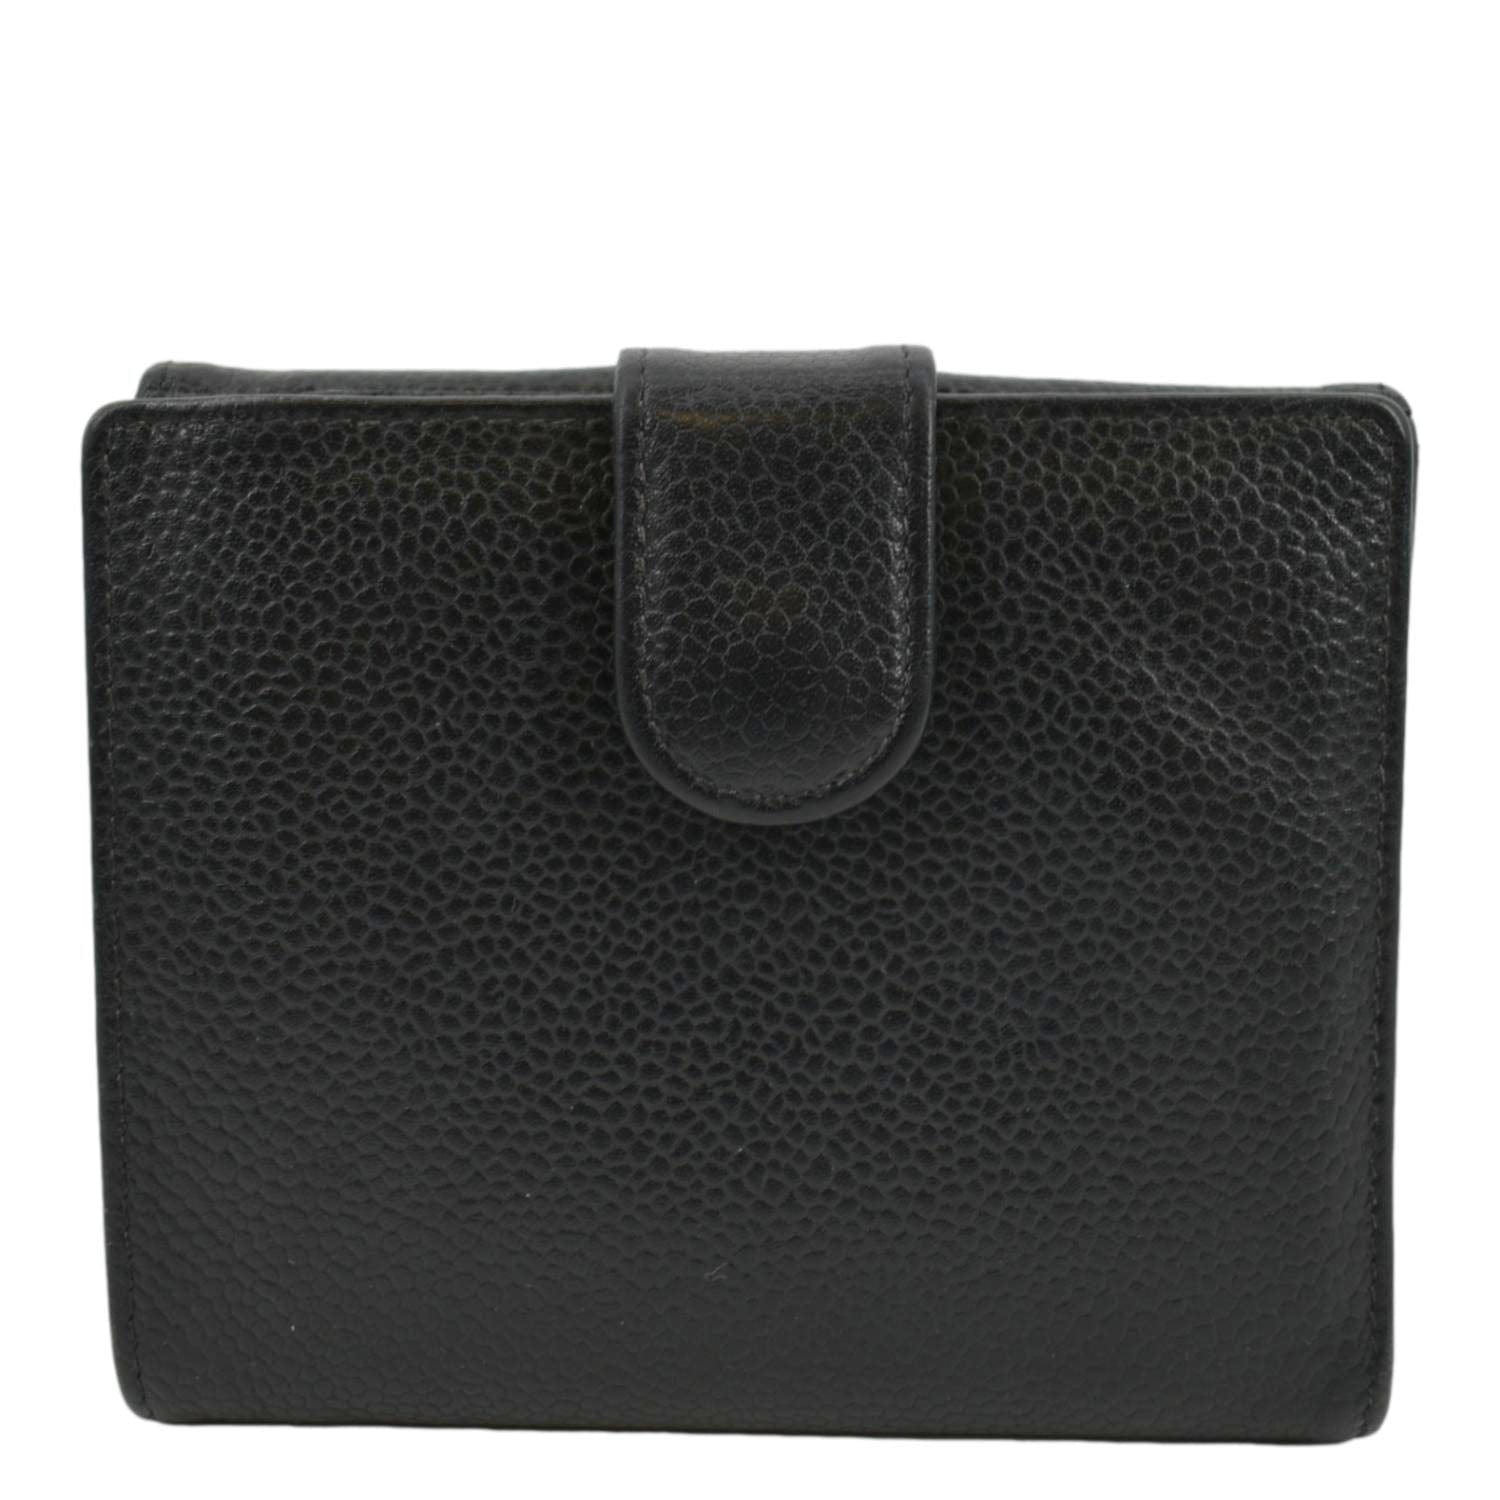 Chanel Black Leather Gold Hardware Men's Wallet